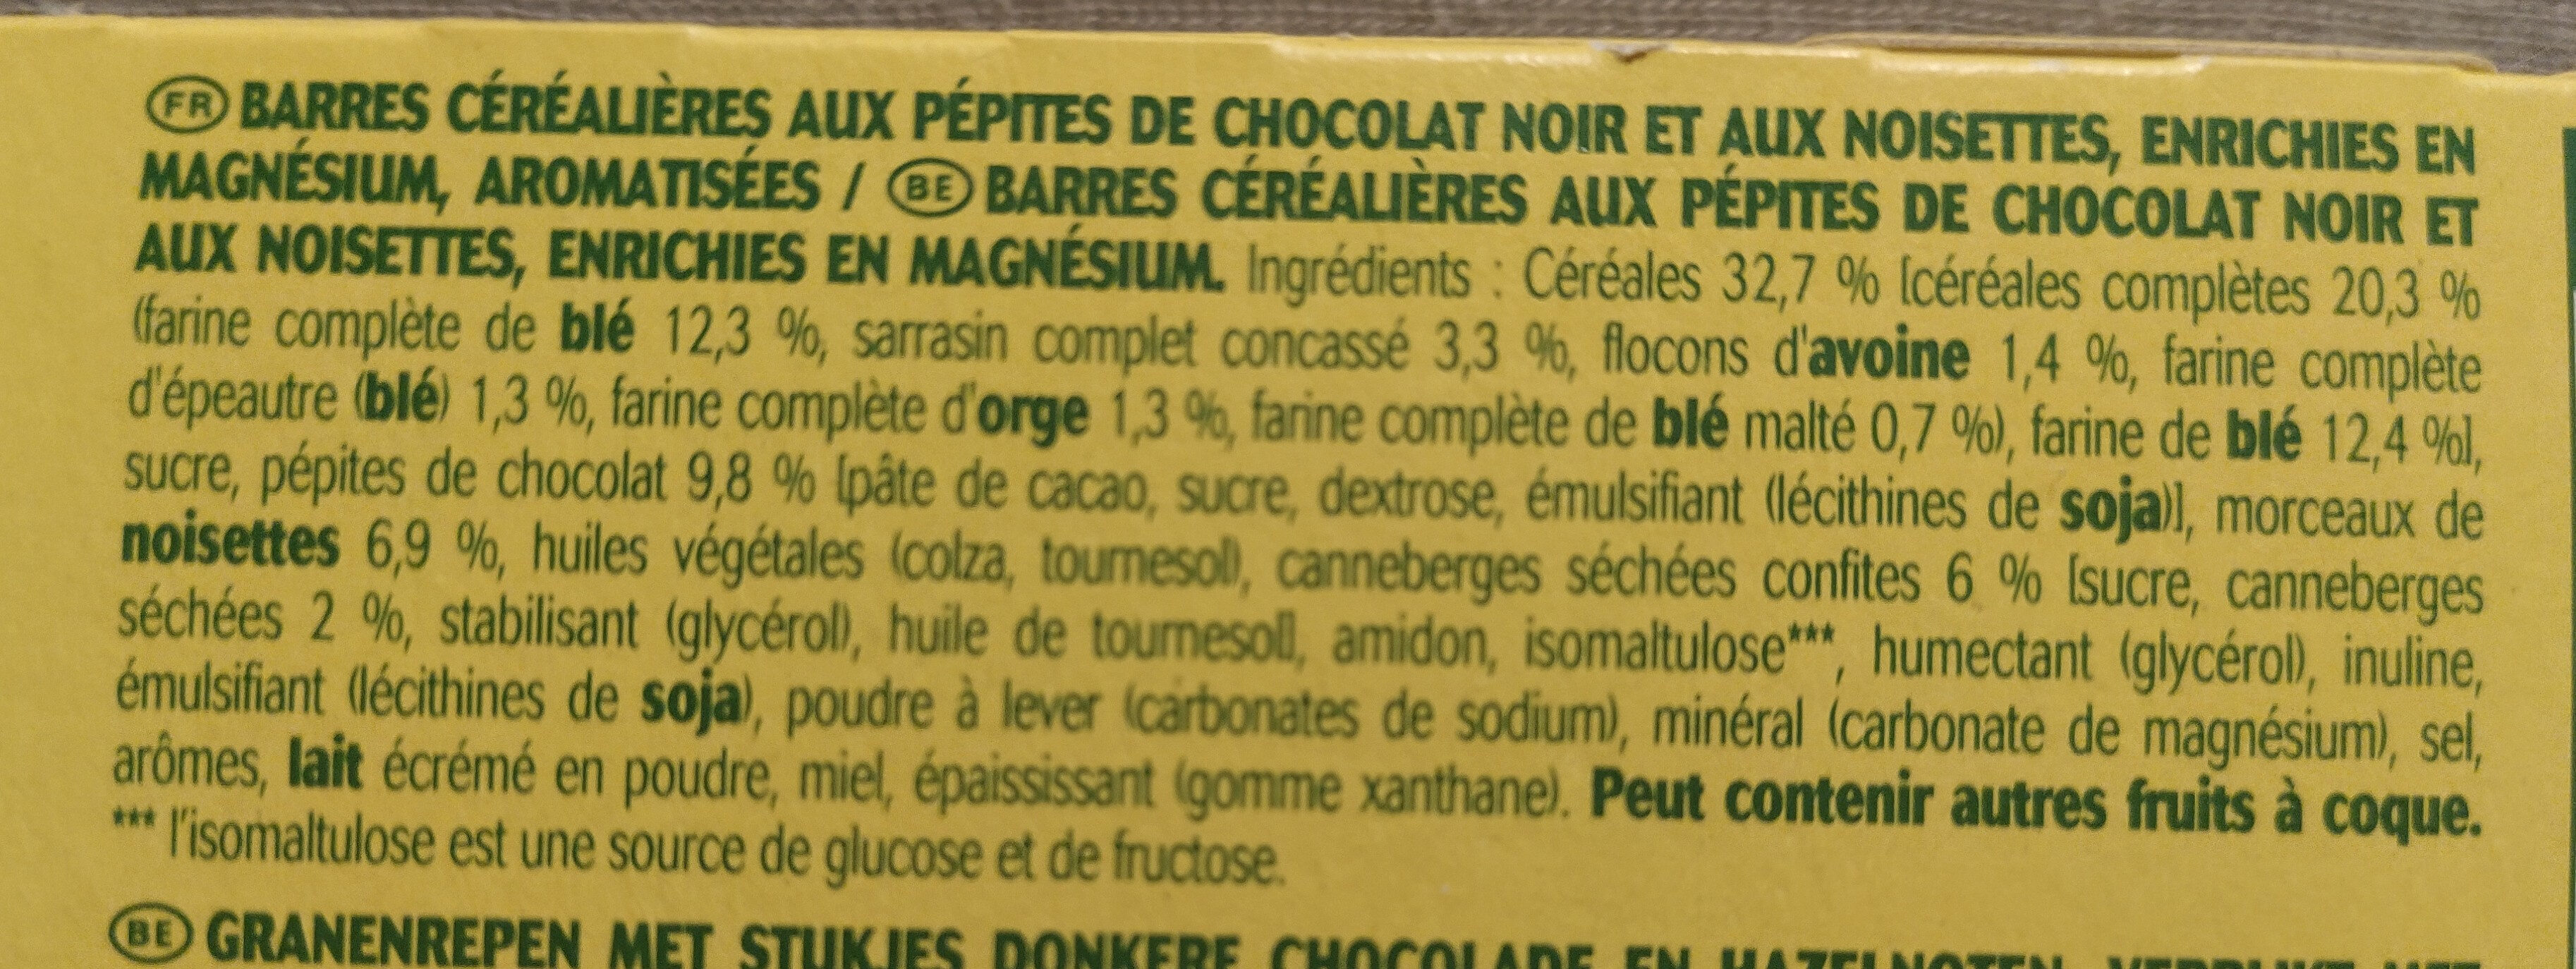 Barre moelleuse chocolat noir et noisettes - Ingrédients